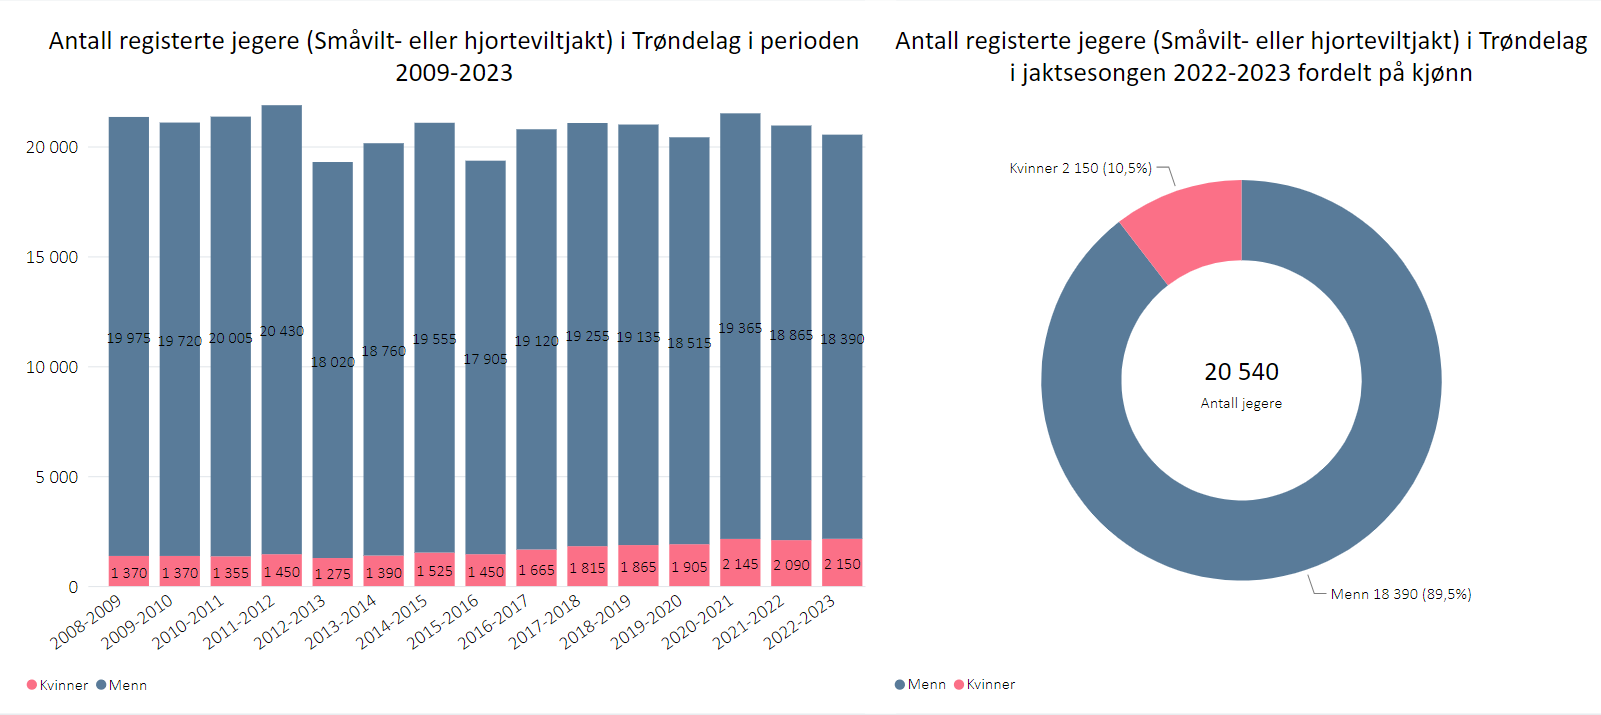 Antall registerte jegere (Småvilt- eller hjorteviltjakt) i Trøndelag i perioden 2009-2023